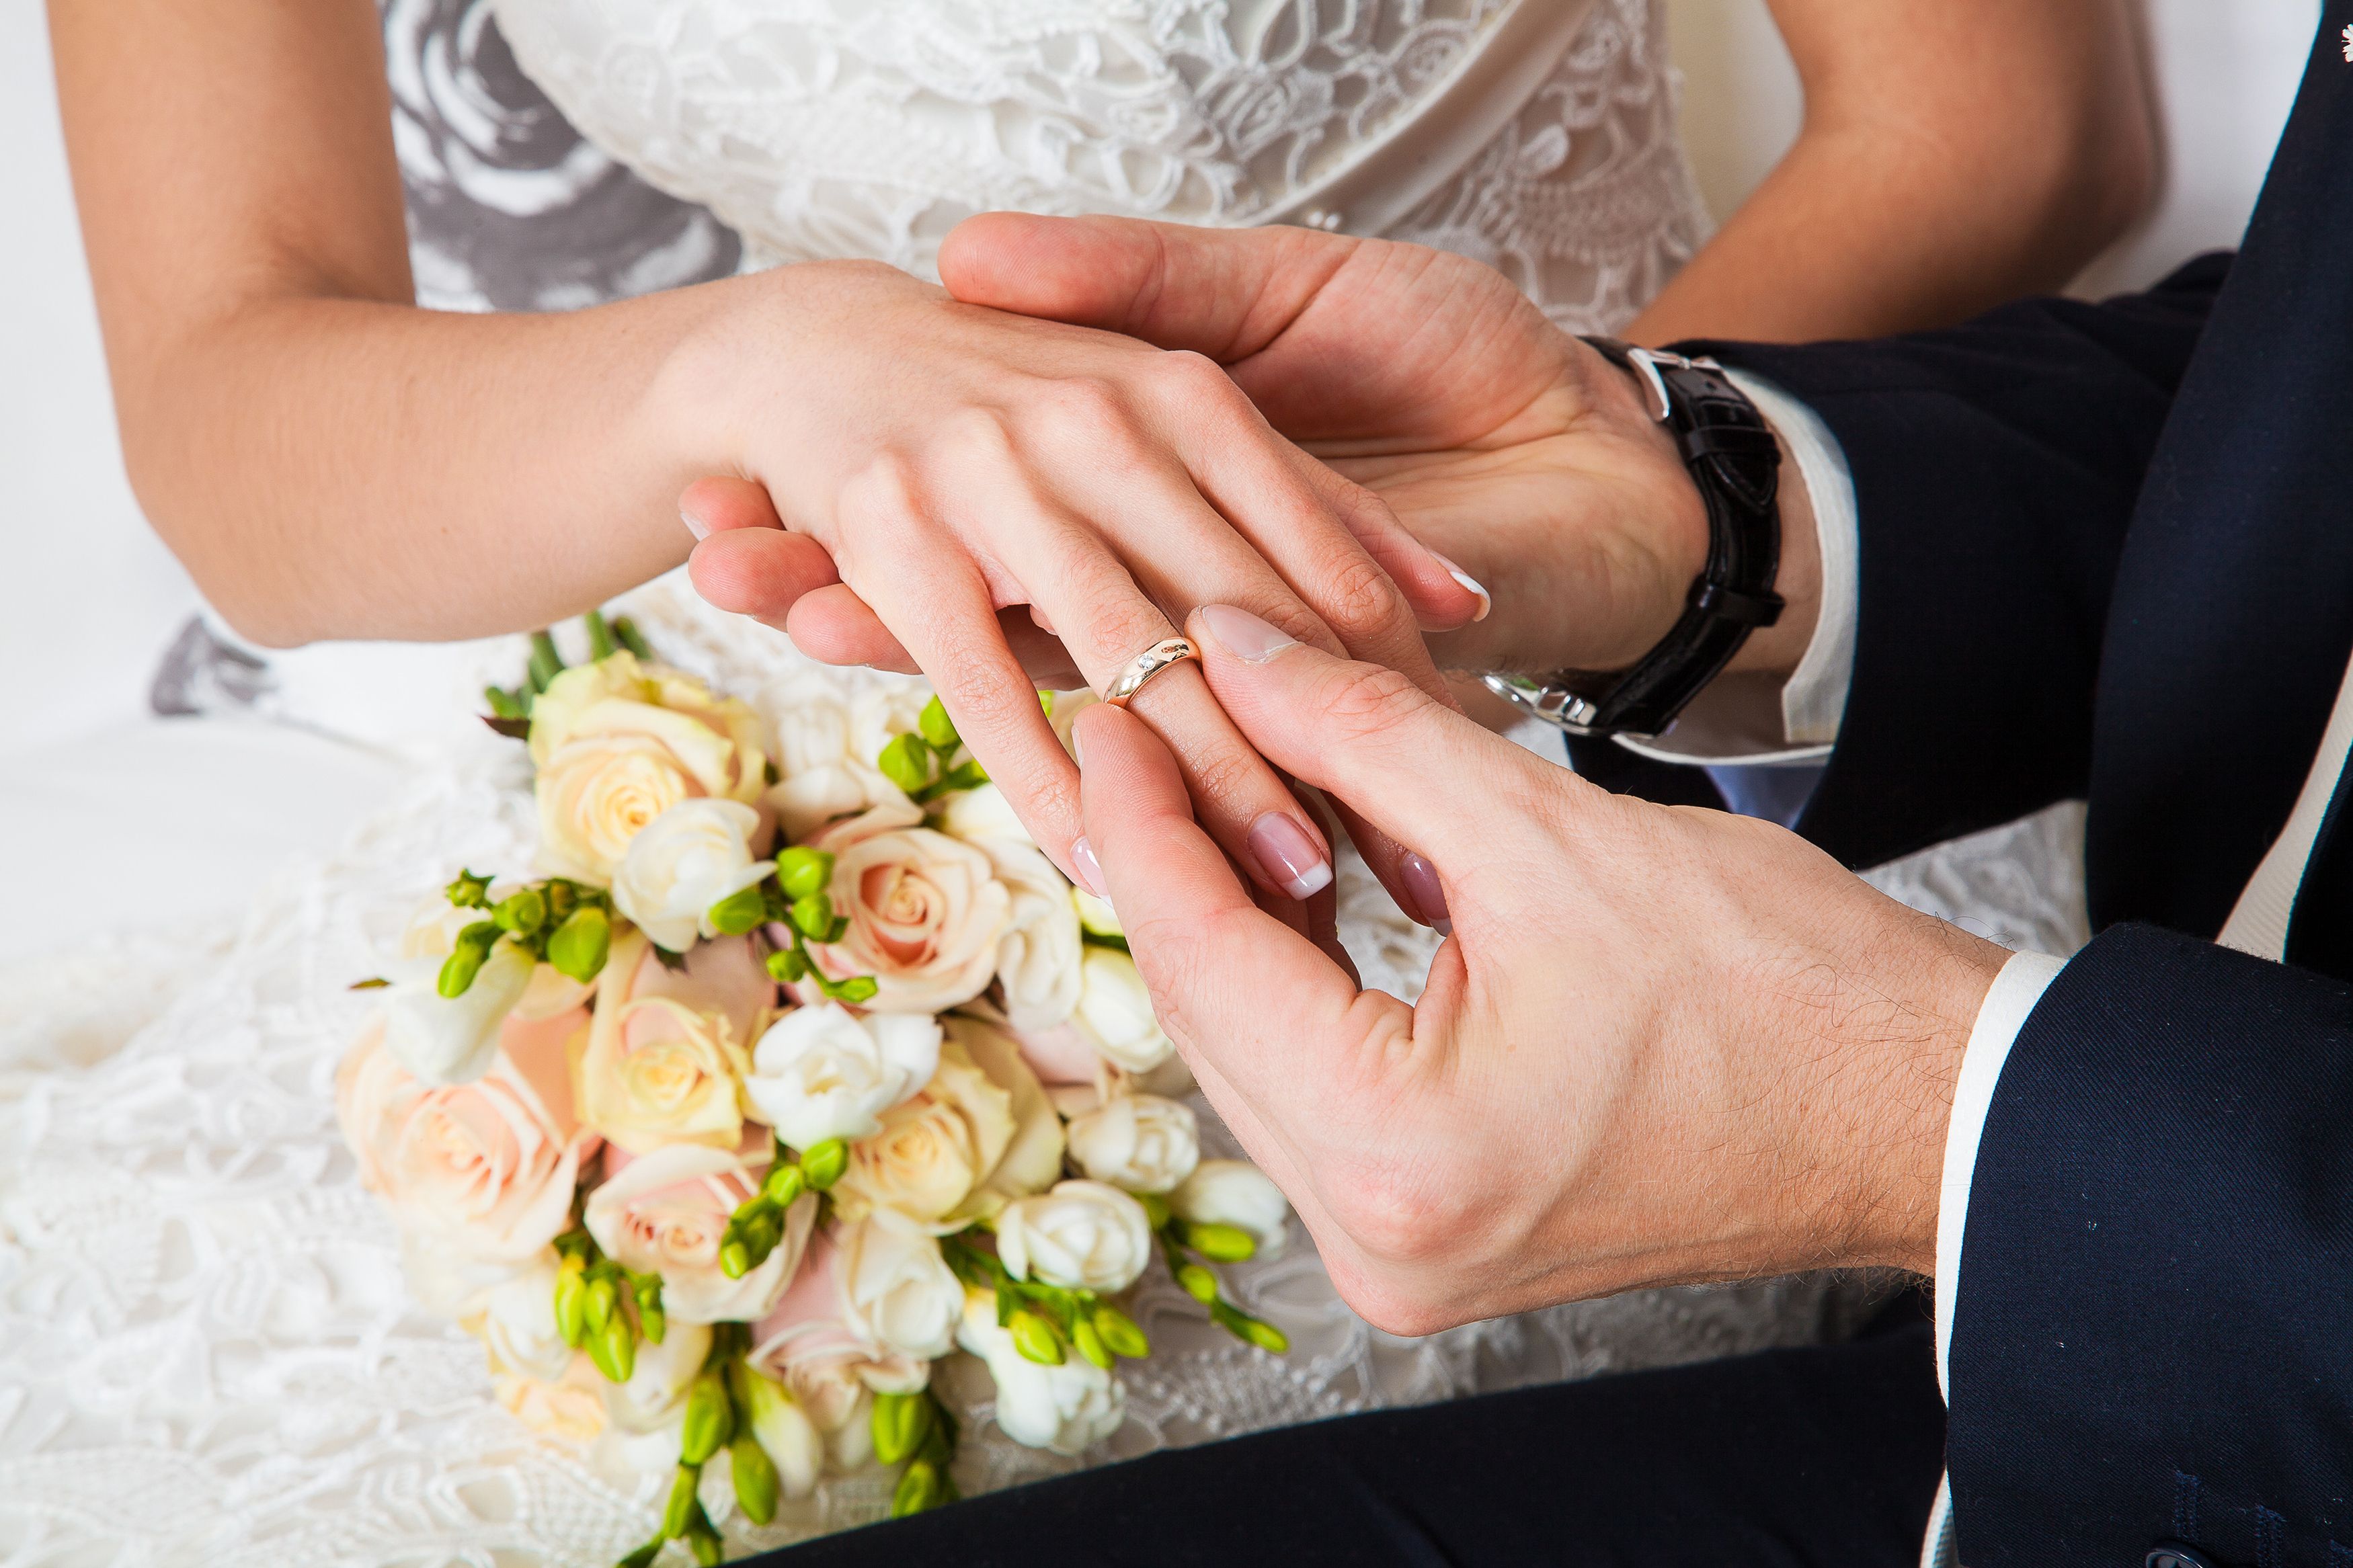 Вступления в брак а также. Свадебные кольца на руках. Жених одевает кольцо невесте. Кольца жениха и невесты. Обручальные кольца жених и невеста.